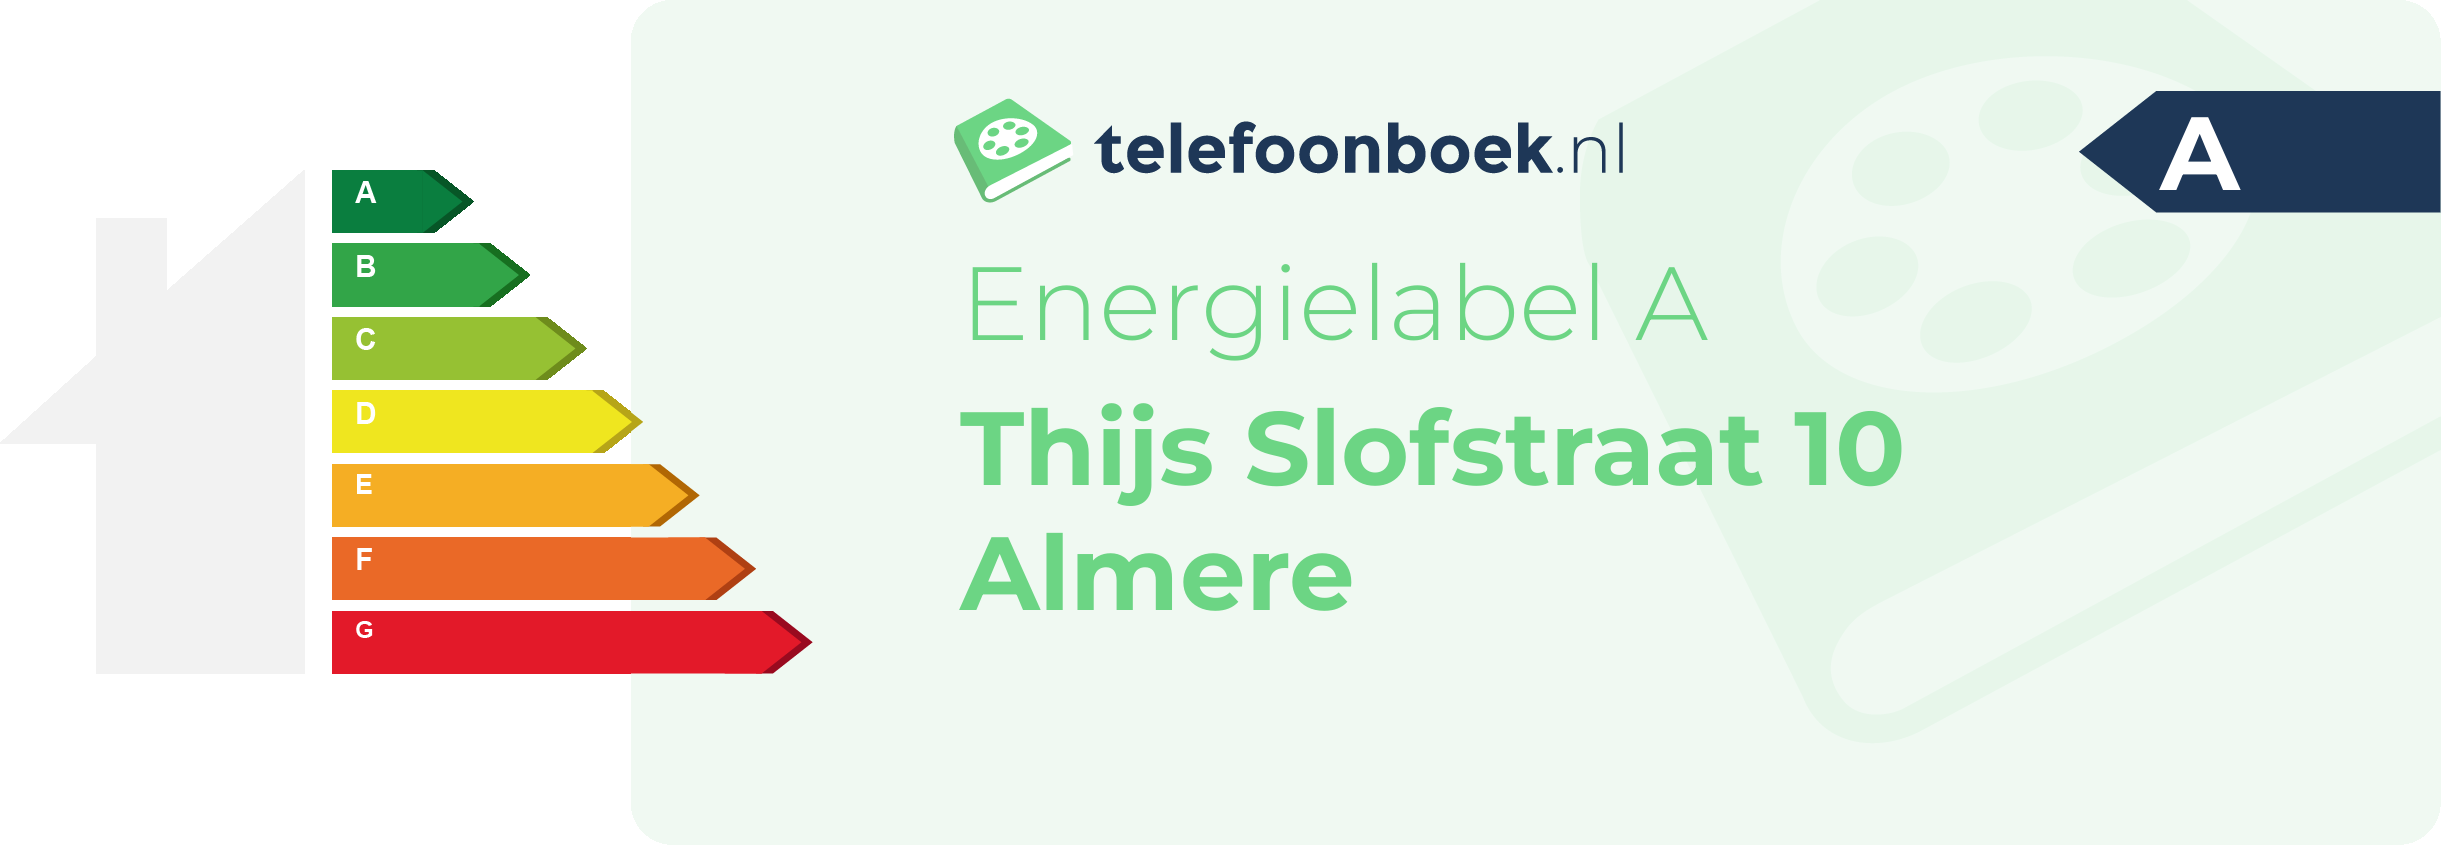 Energielabel Thijs Slofstraat 10 Almere